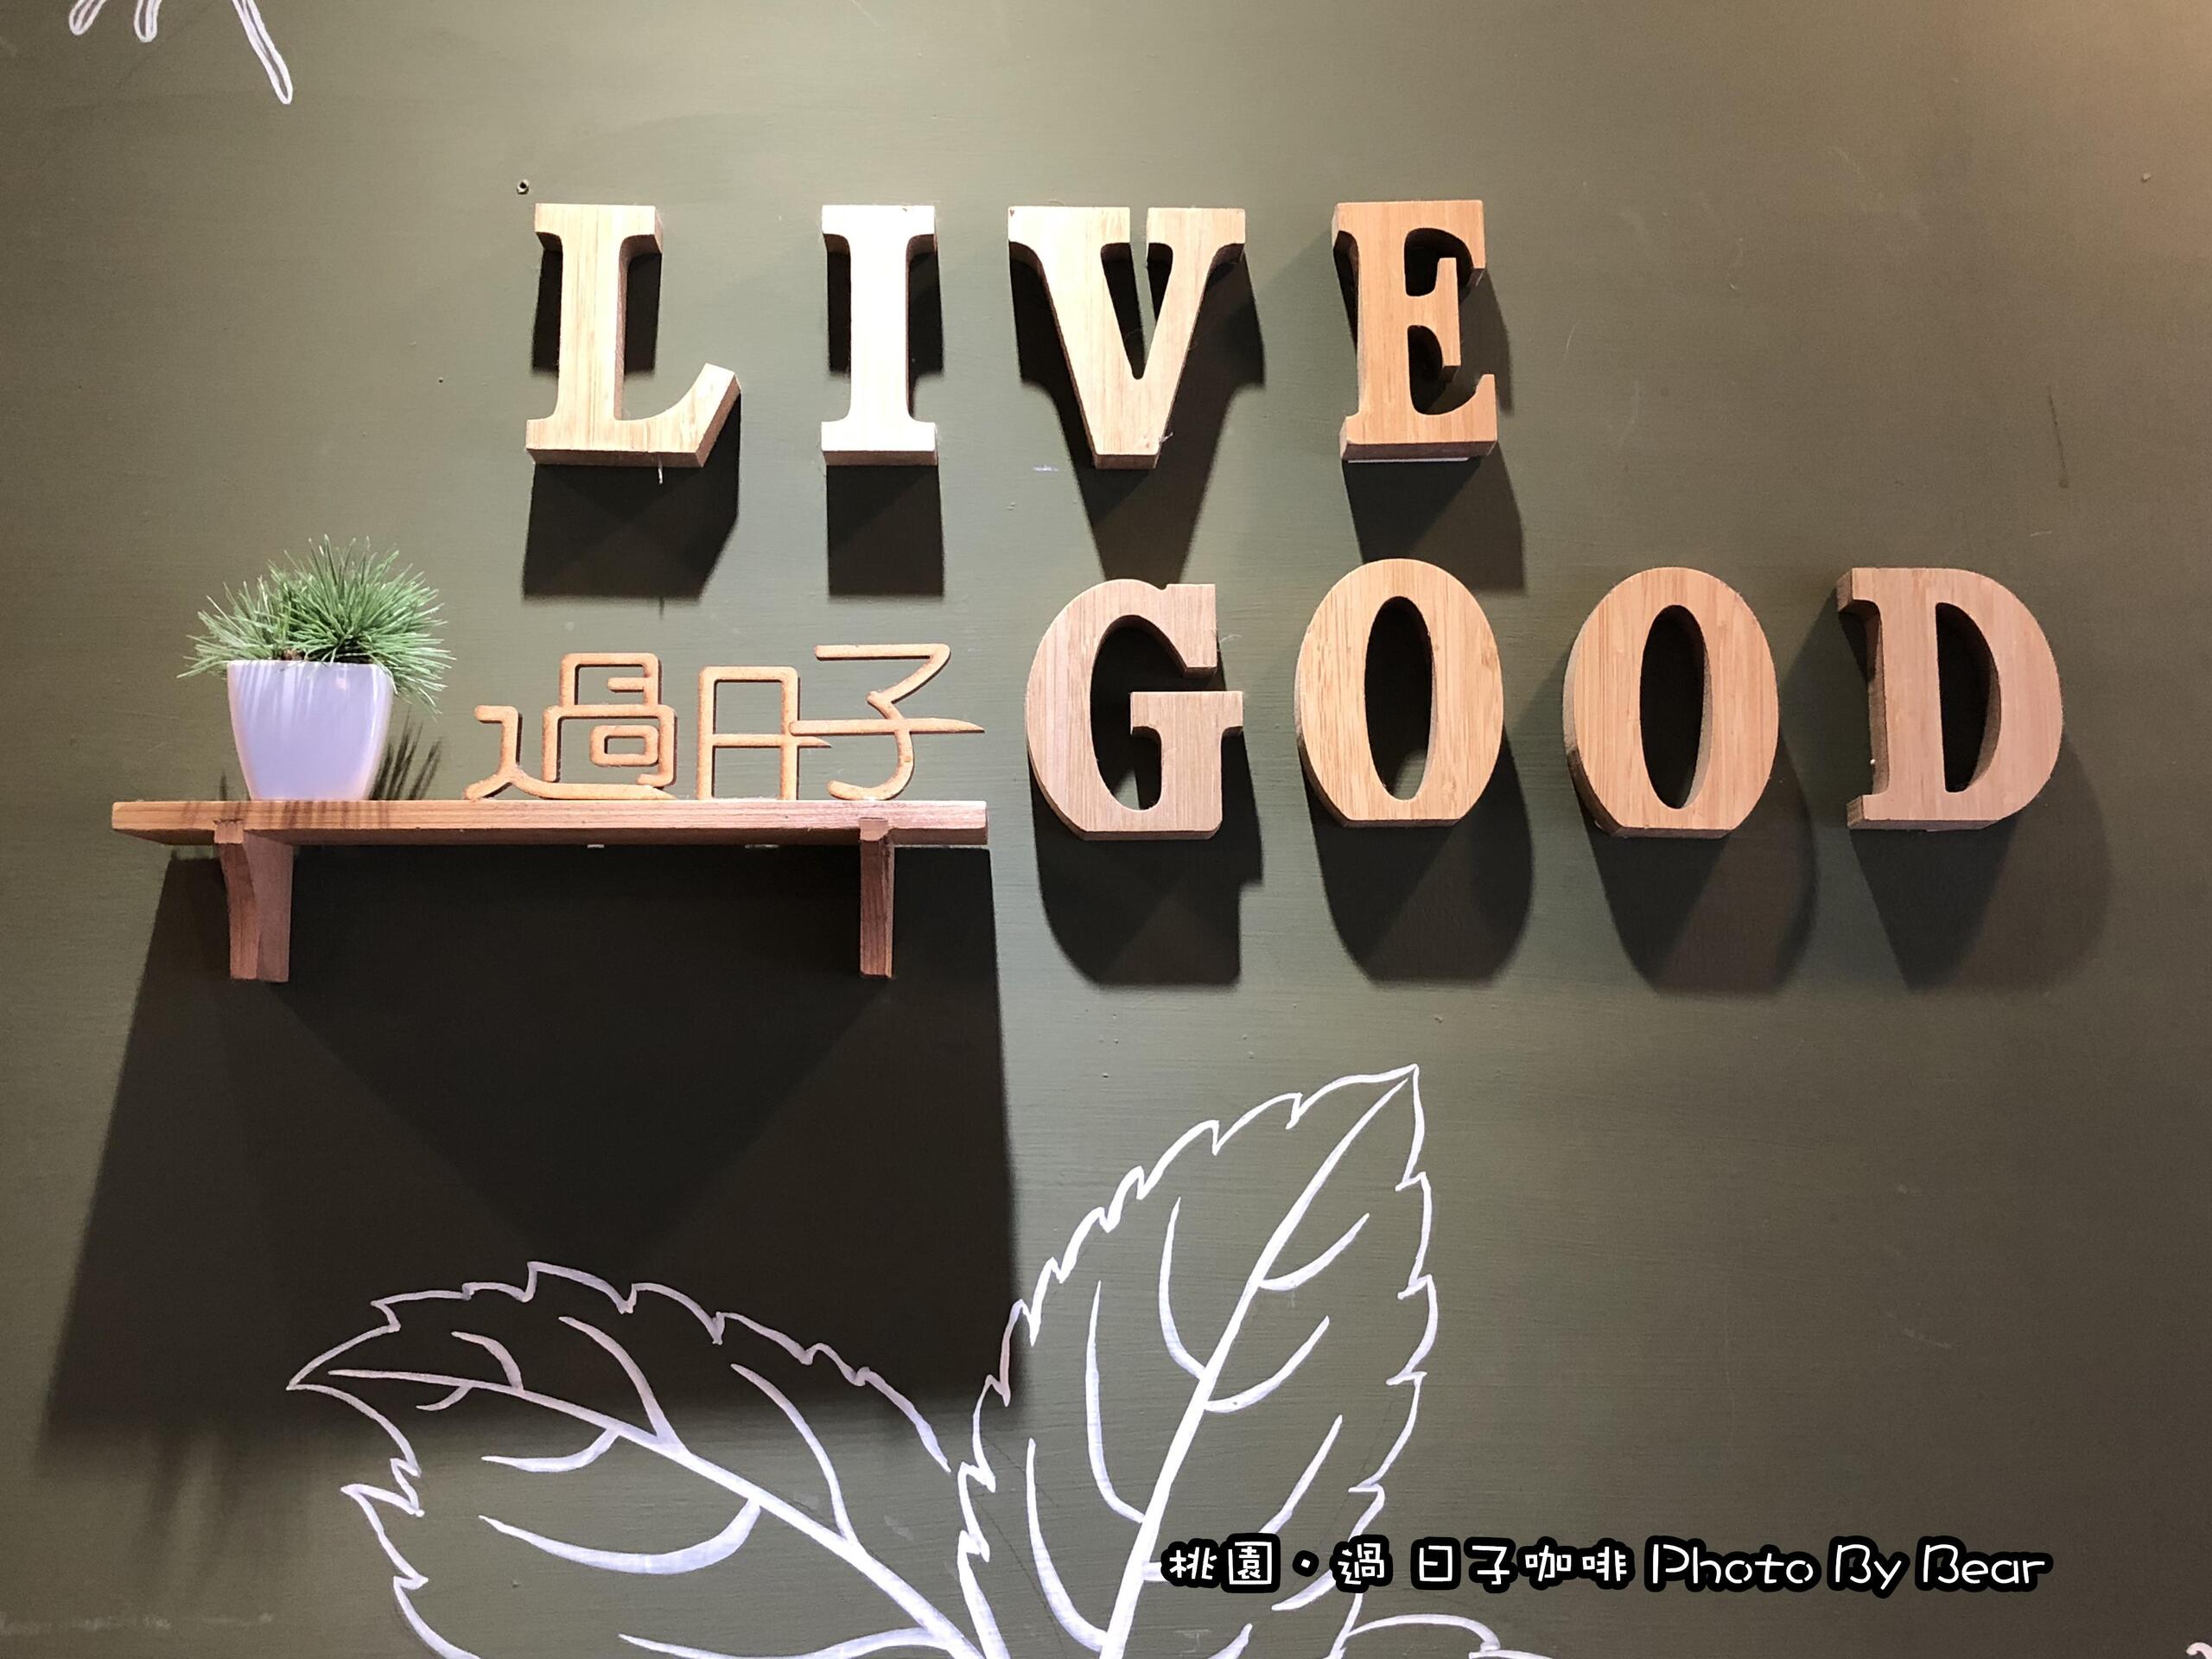 【桃園】「過日子咖啡Live Good Cafe(創意披薩麵/早午餐/義大利麵/漢堡/寵物友善)」